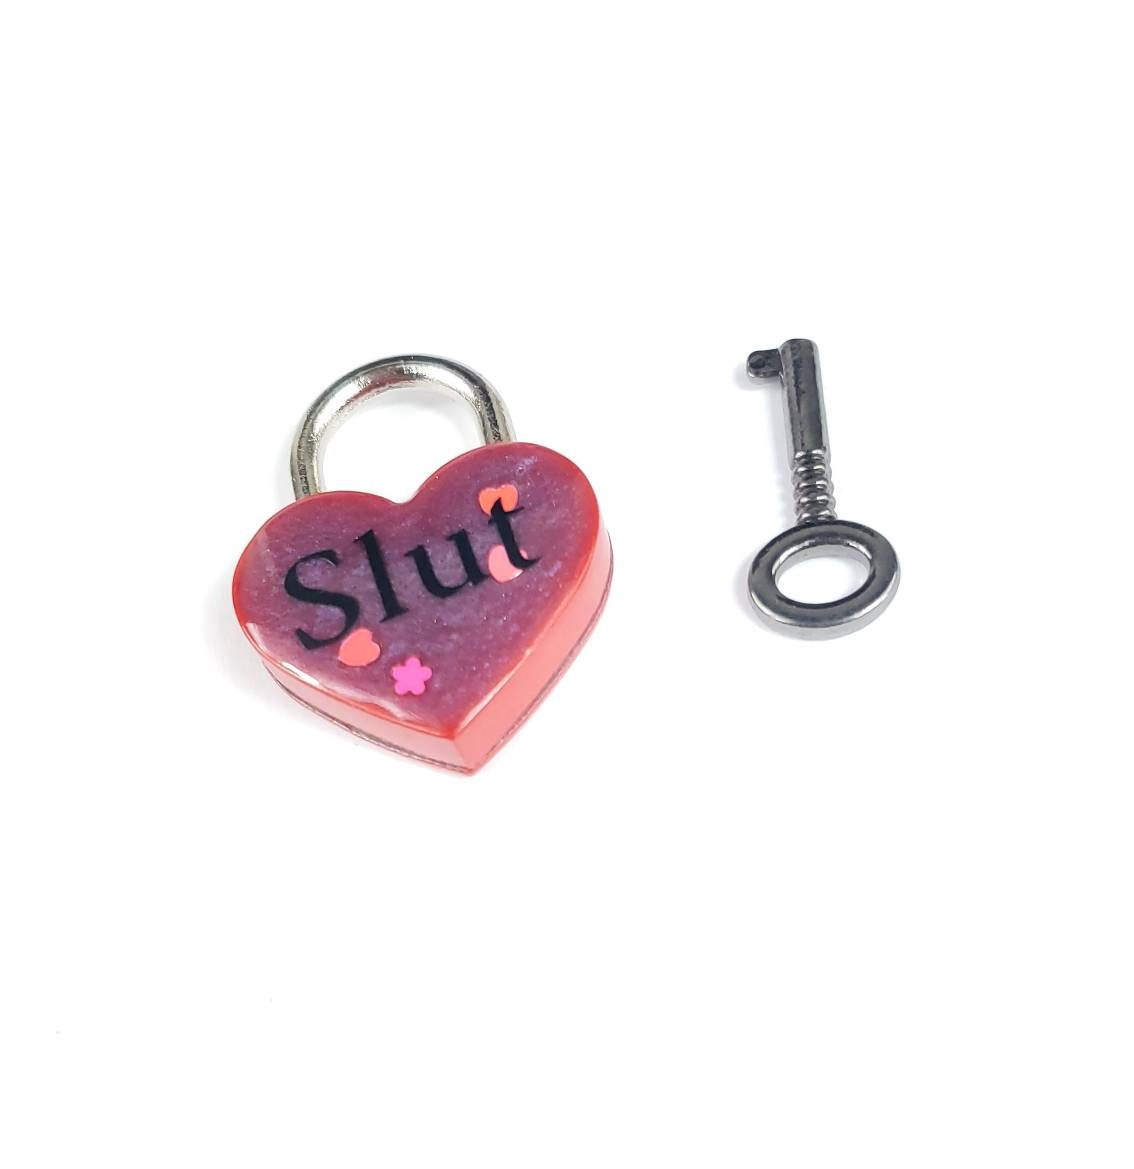 Slut Heart Pad Lock- Resin Aluminum Heart Lock- BDSM Collar Closure Lock- DDLG Heart Lock and Key- Pet Play Heart Lock- Red Mini Lock